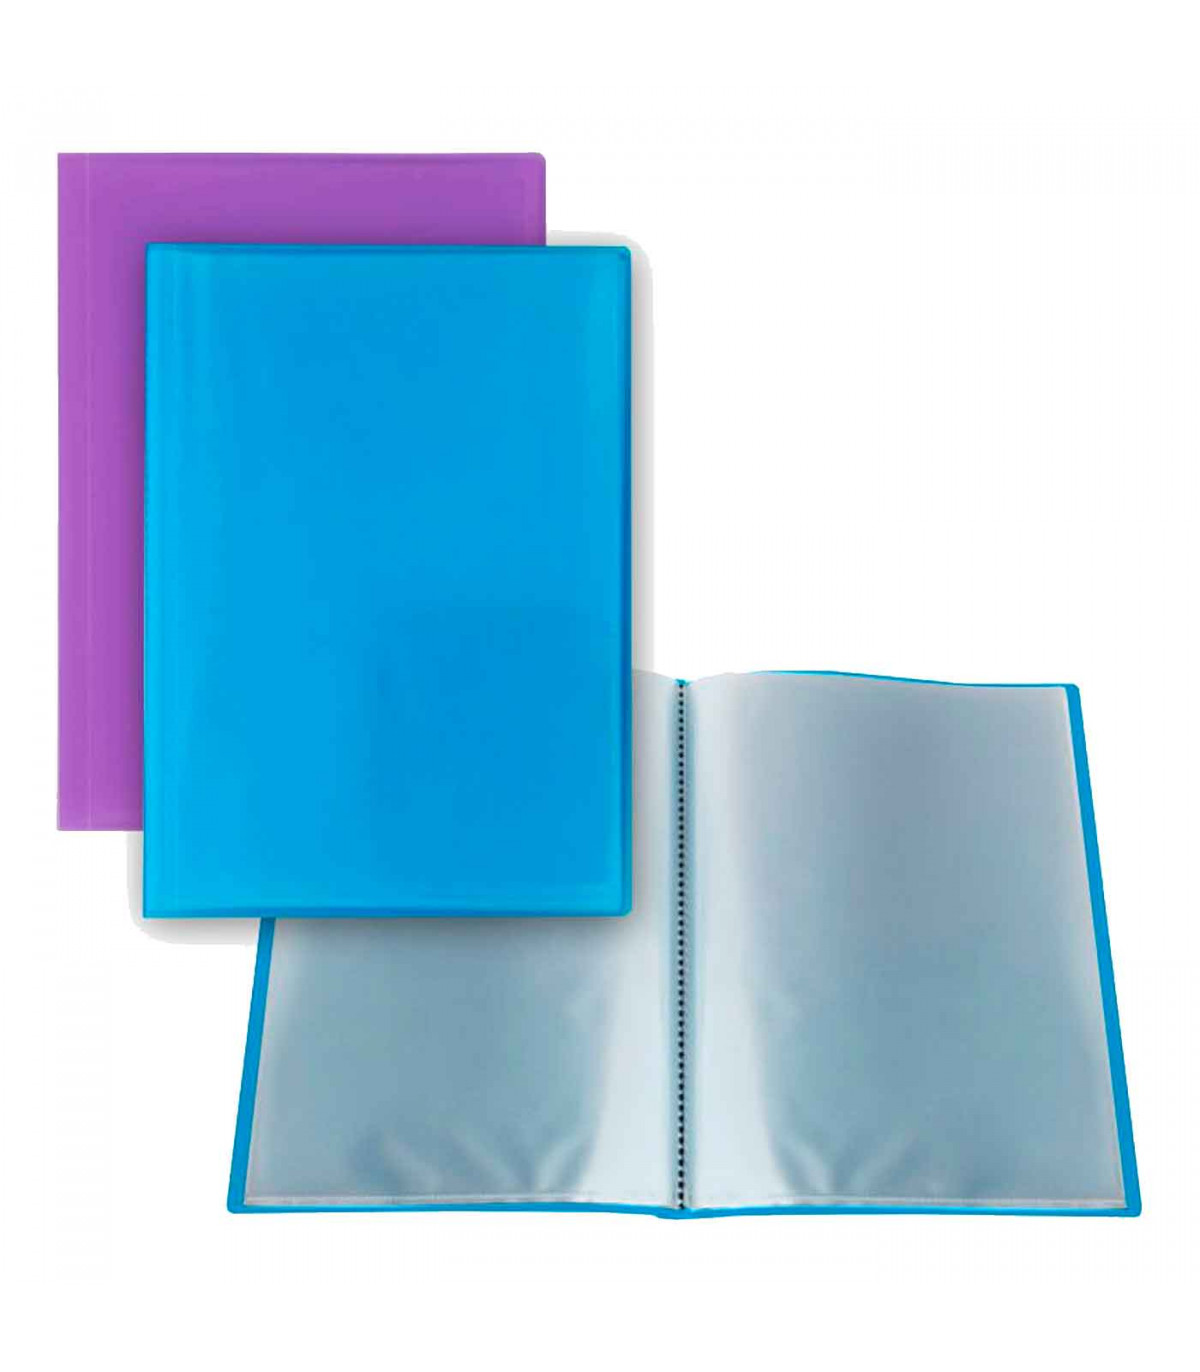 Tradineur - Carpeta de plástico A4 con gomas elásticas y 3 solapas, tamaño  folio, guardar apuntes, documentos, estudiantes, ofic